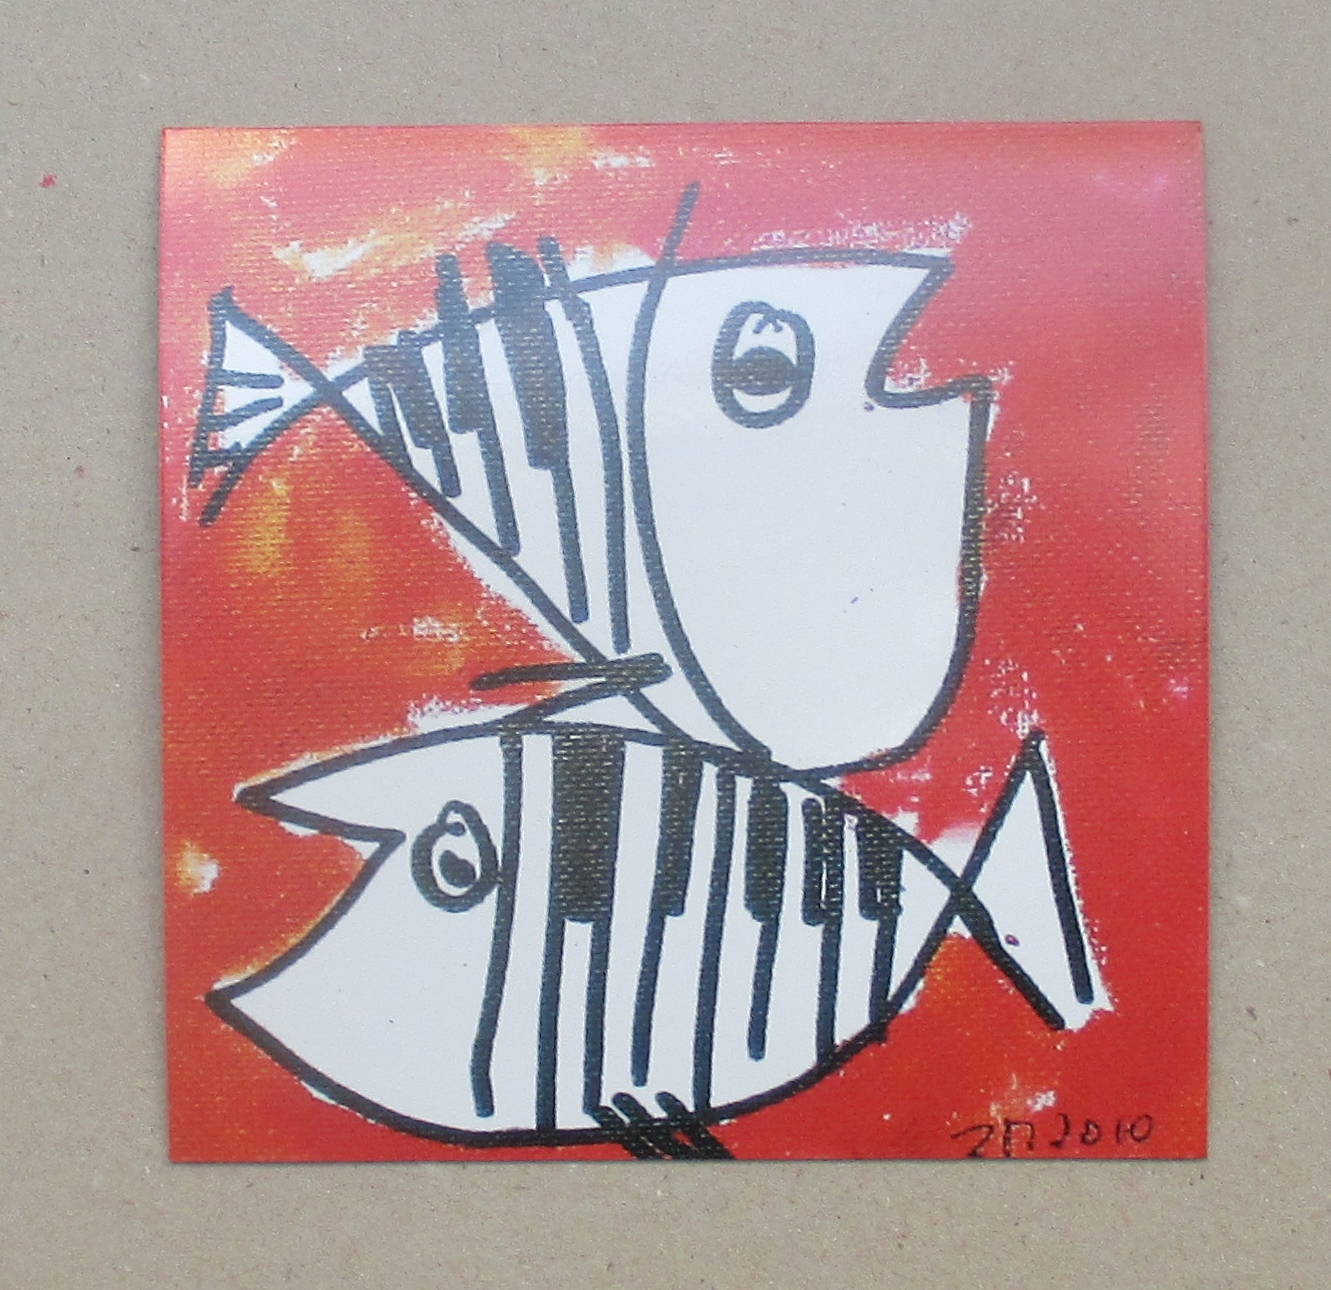 1 x Jazz Fische je 10x10 cm auf Magnet gedruckt - signiert/x/10 numeriert kostenloser Versand 2